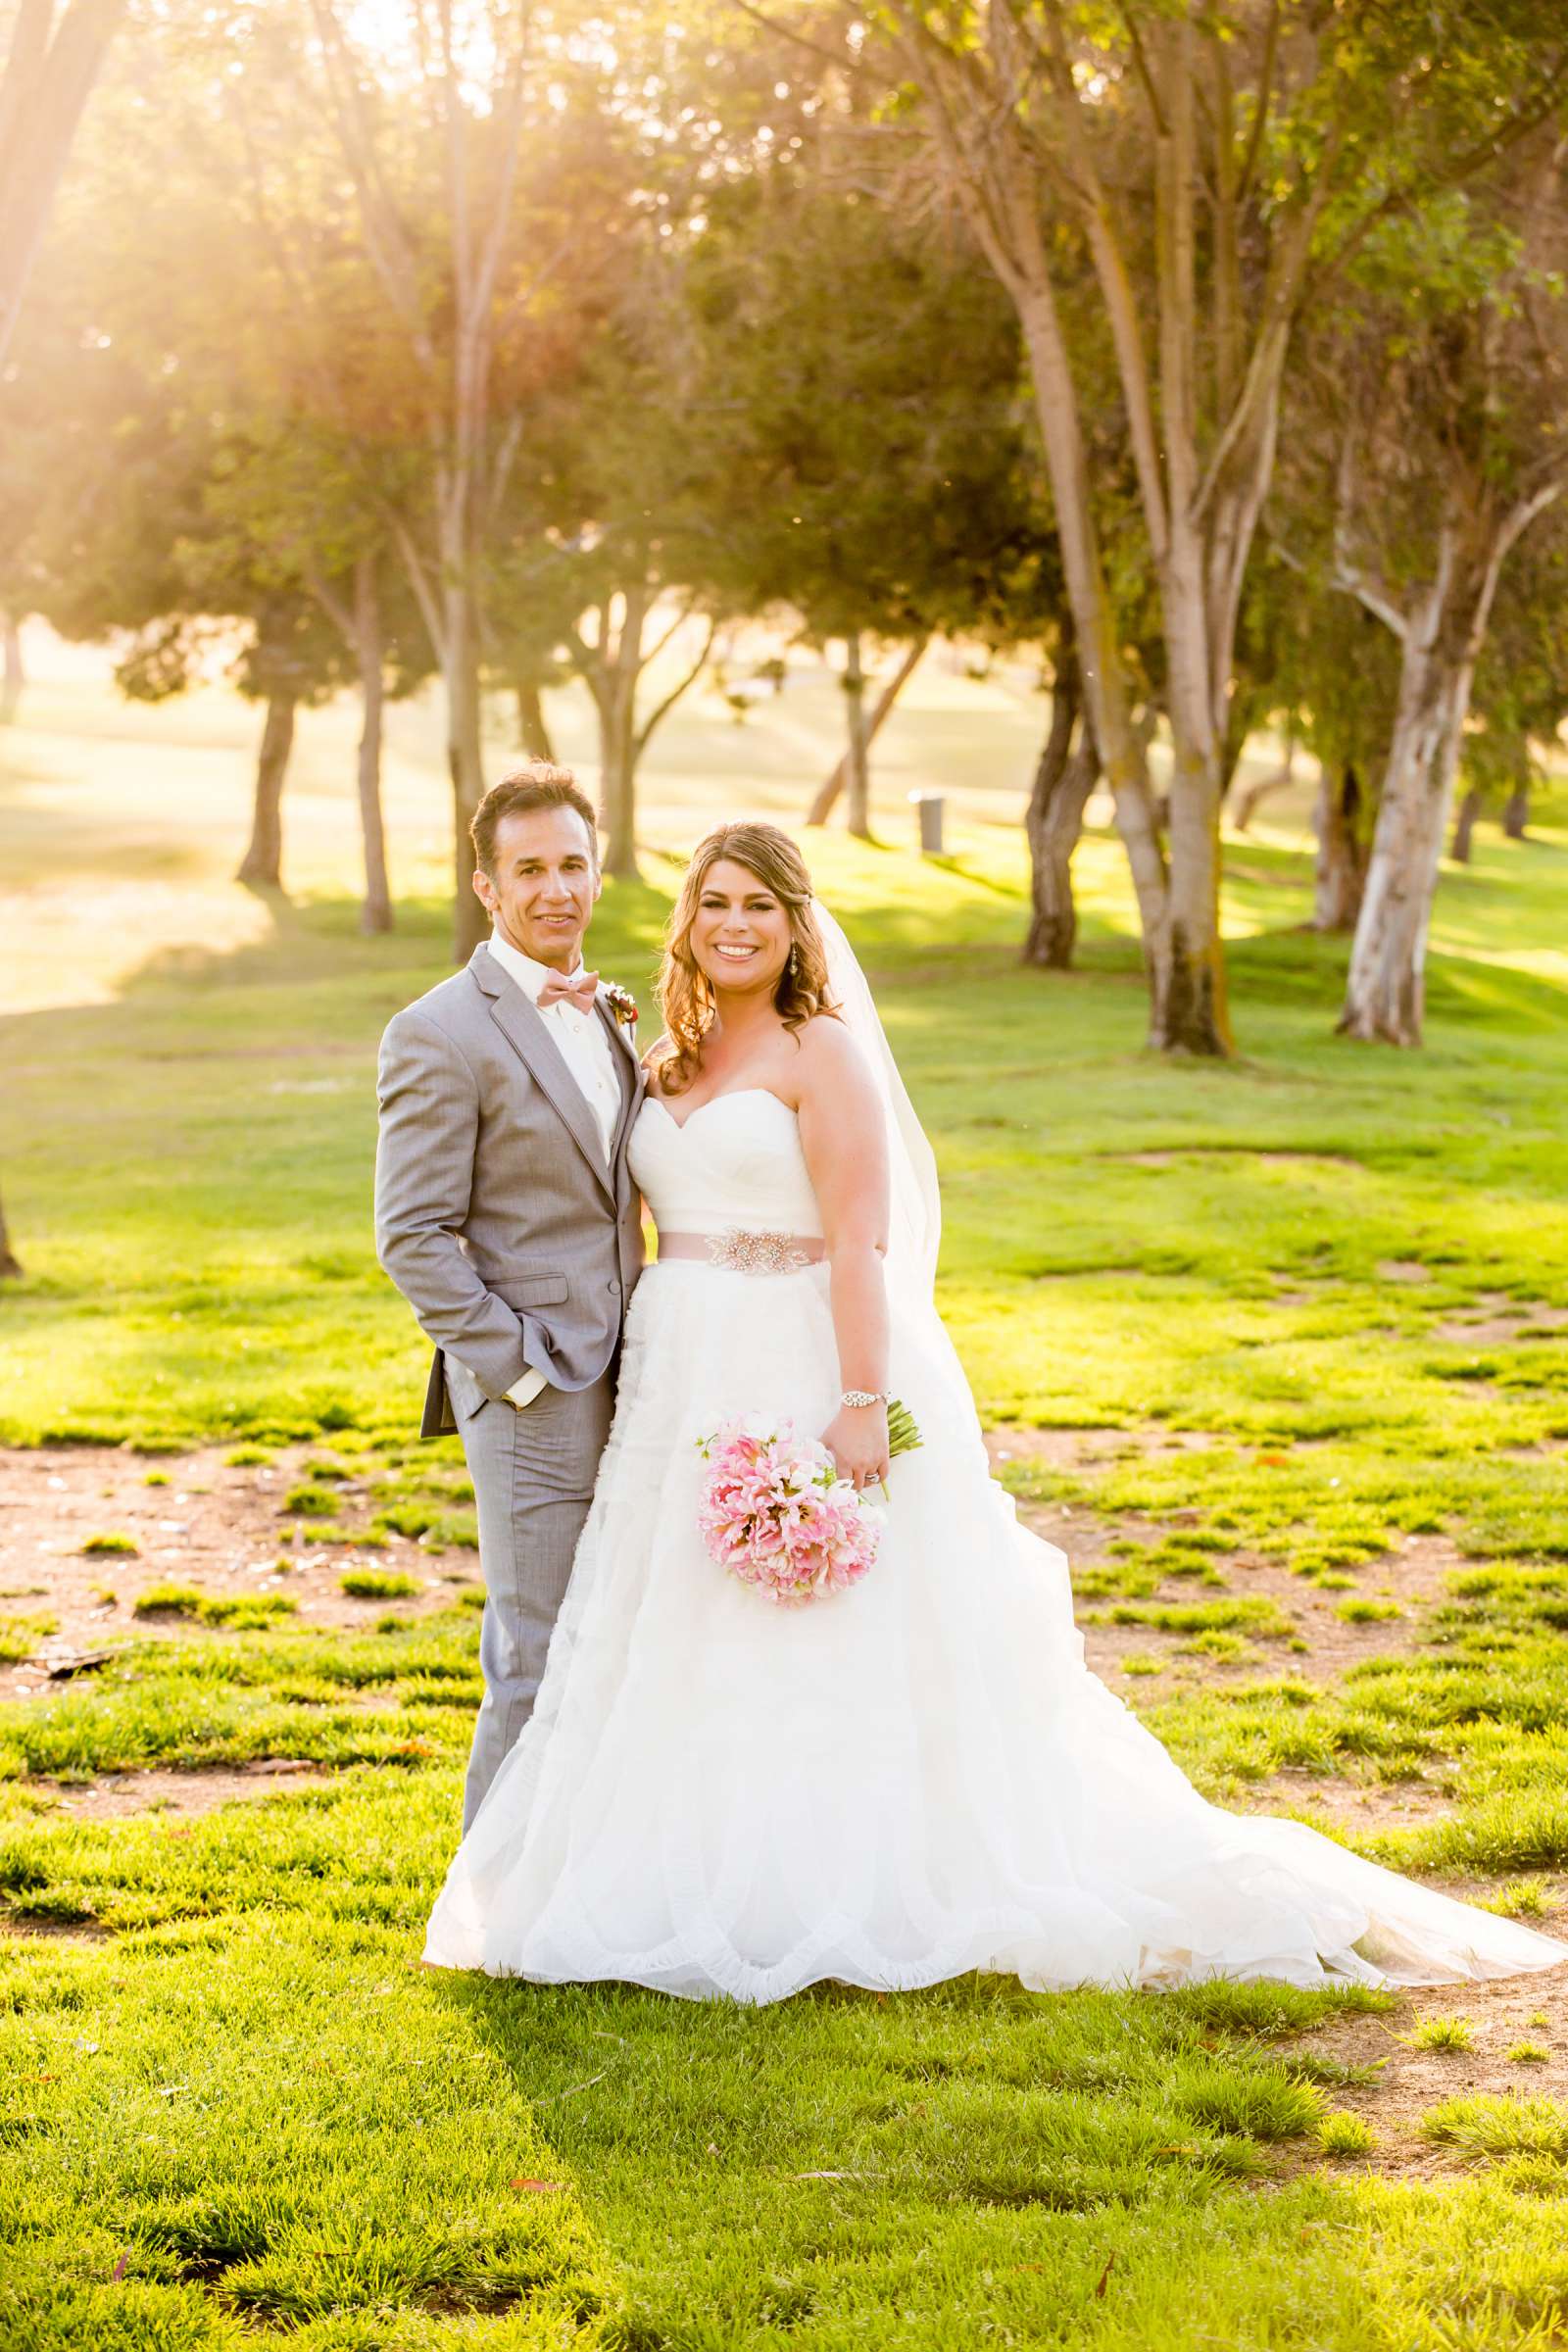 Rancho Santa Fe Golf Club Wedding coordinated by Monarch Weddings, Carolynn and Jon Wedding Photo #7 by True Photography